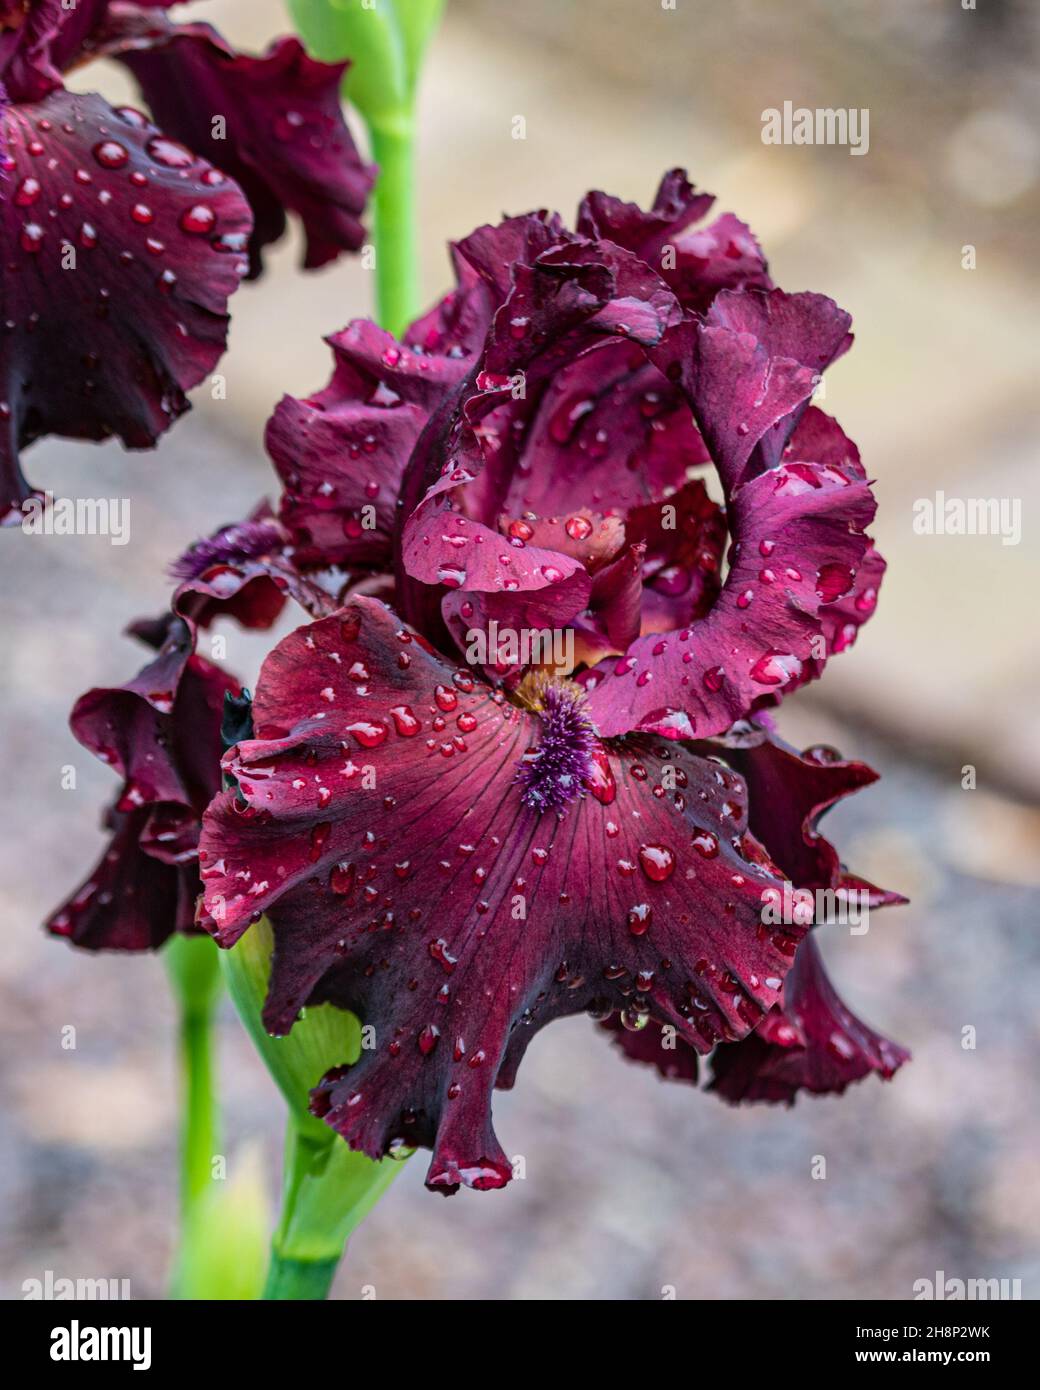 Gros plan sur la fleur de l'iris de la 'zone d'extrémité'.Pétales rouges, recouverts de gouttes de pluie.Jardin botanique du Missouri, St. Louis, Missouri. Banque D'Images